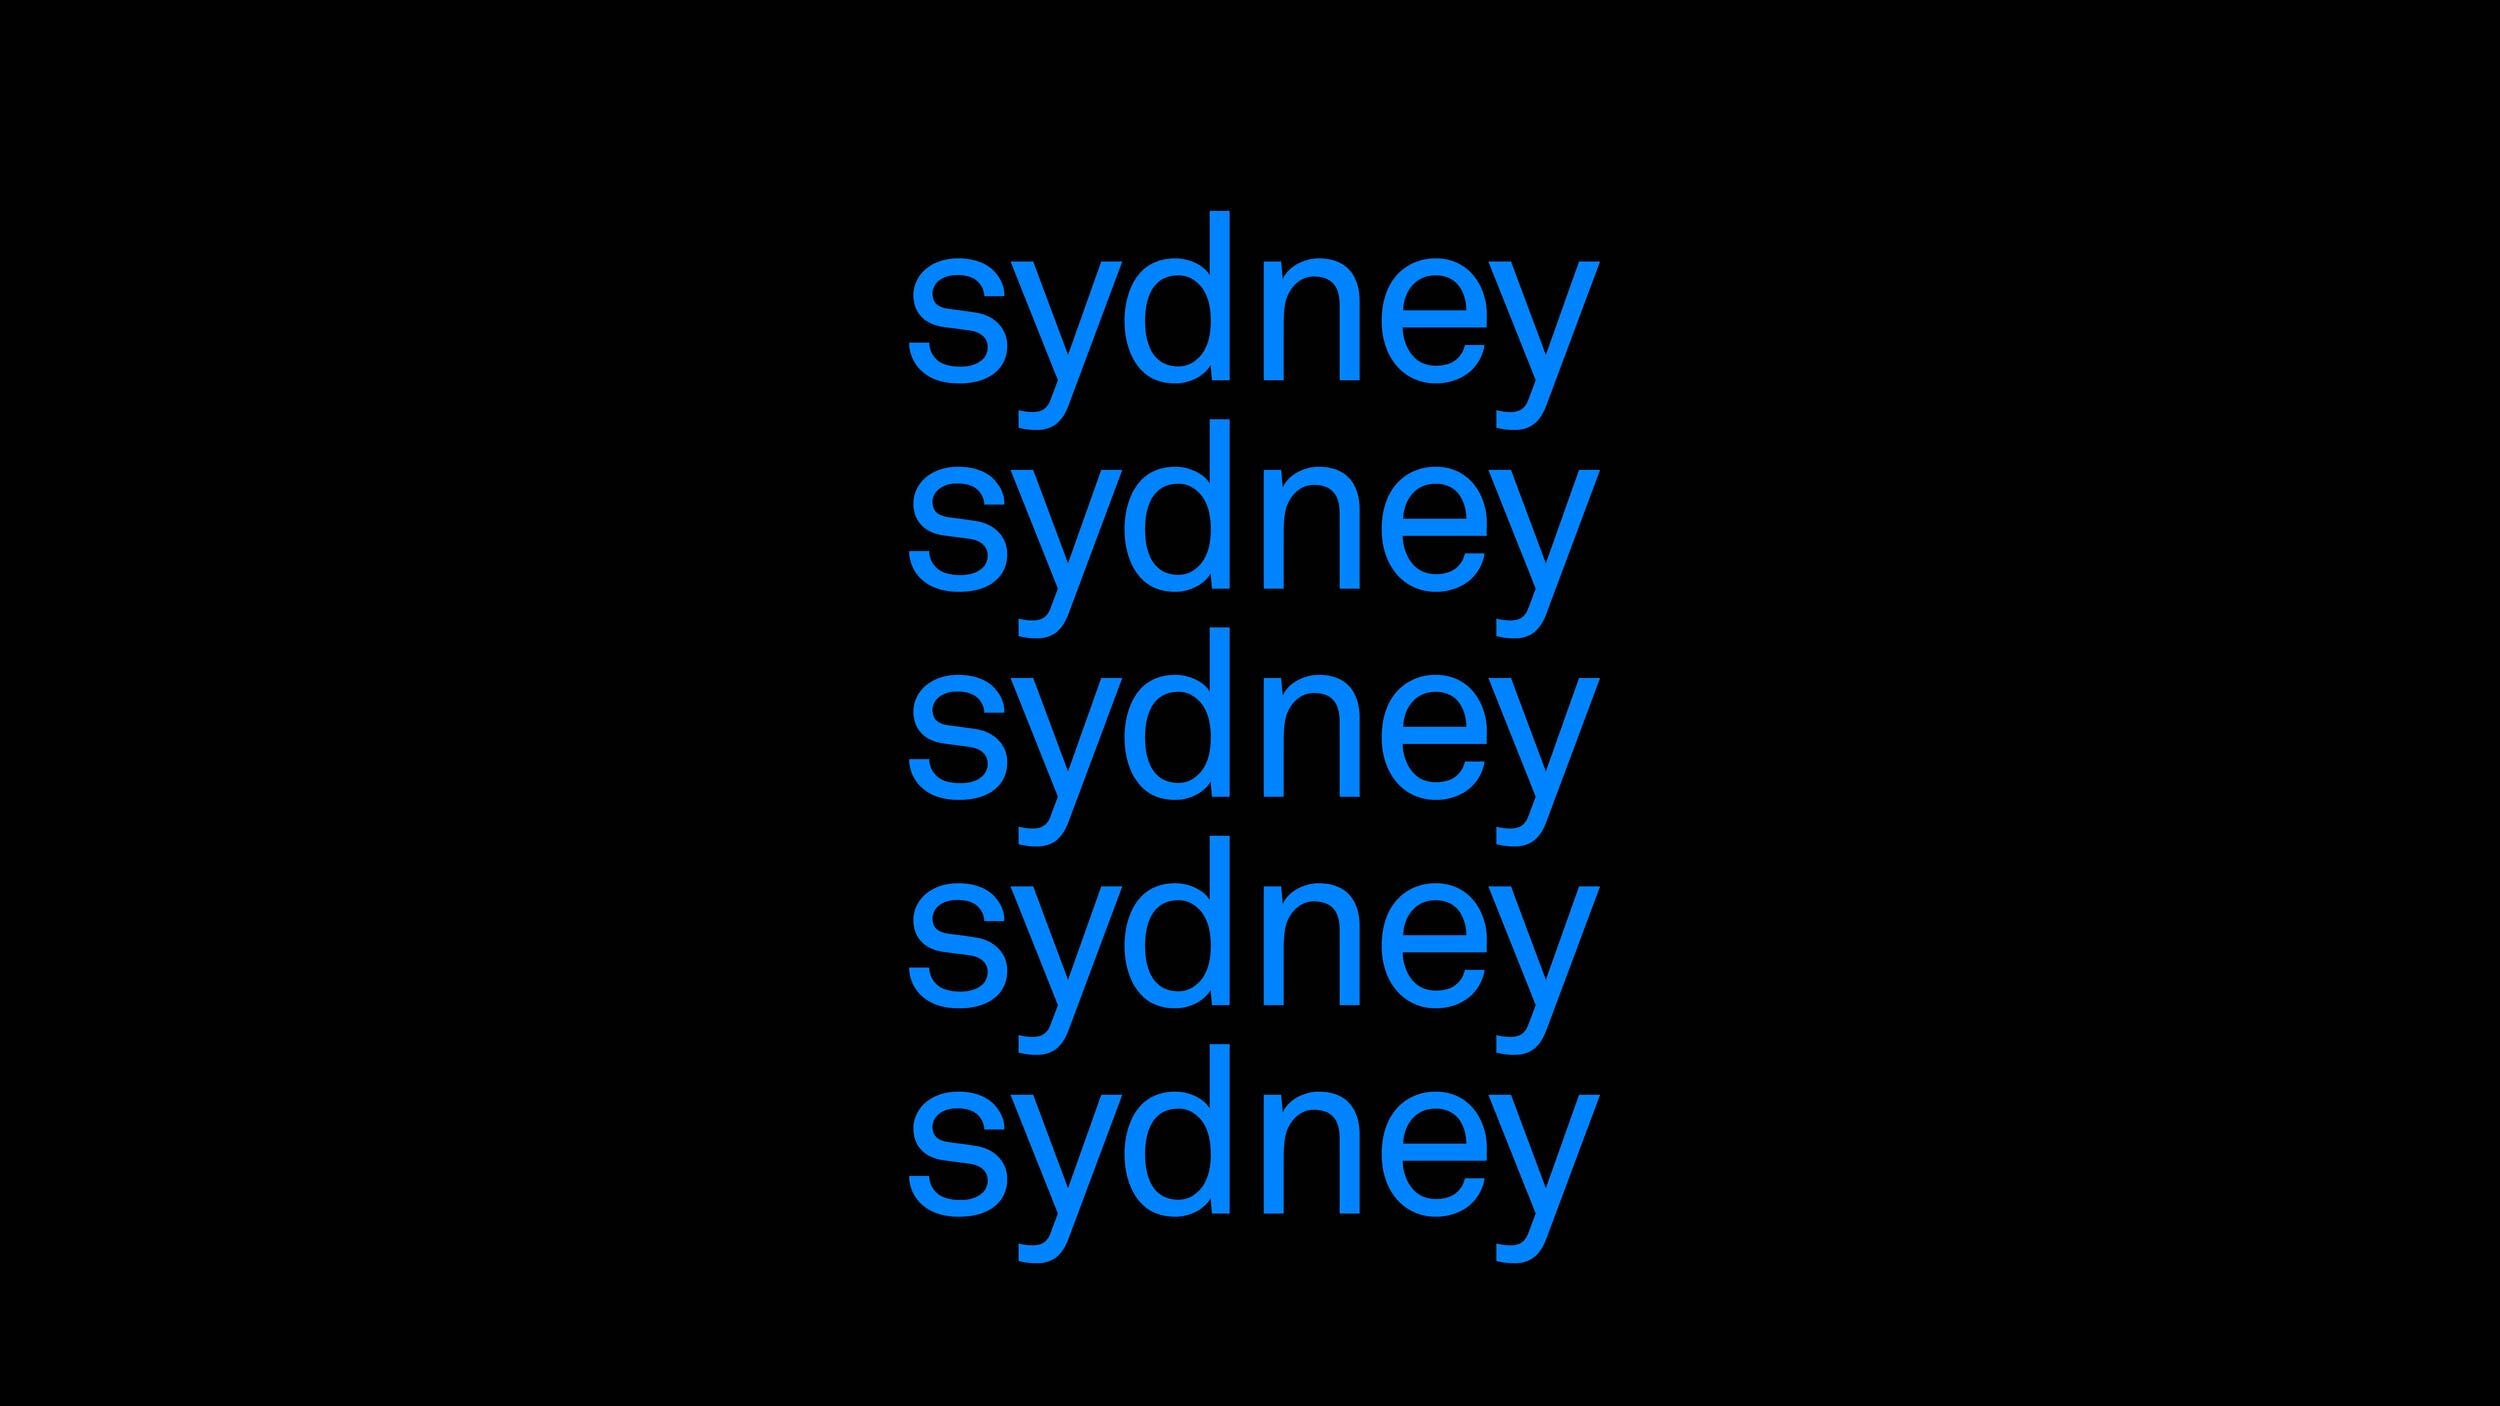 Website_Sydney_Live_Campaign_v210LR.jpg